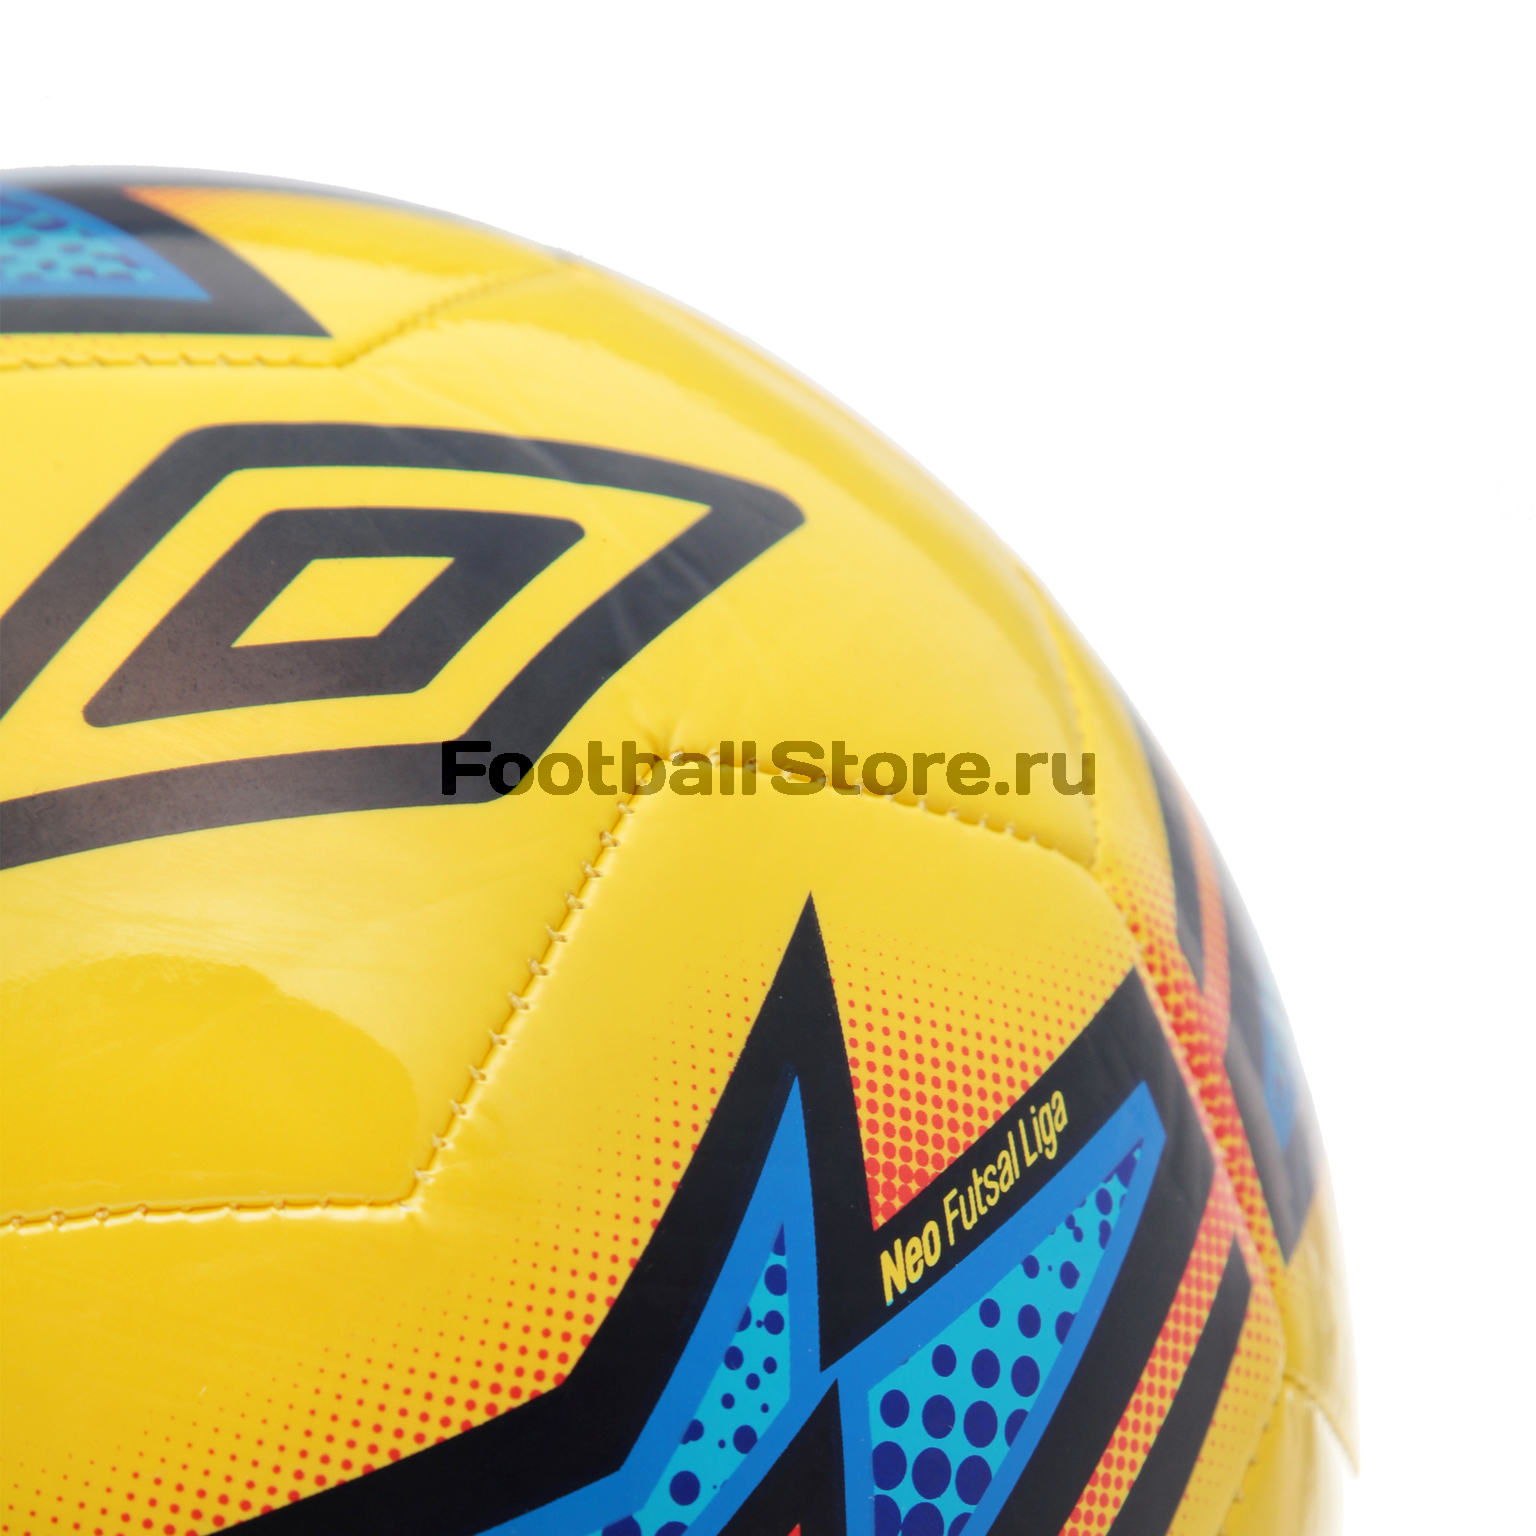 Футзальный мяч Umbro Neo Liga 20871U-1